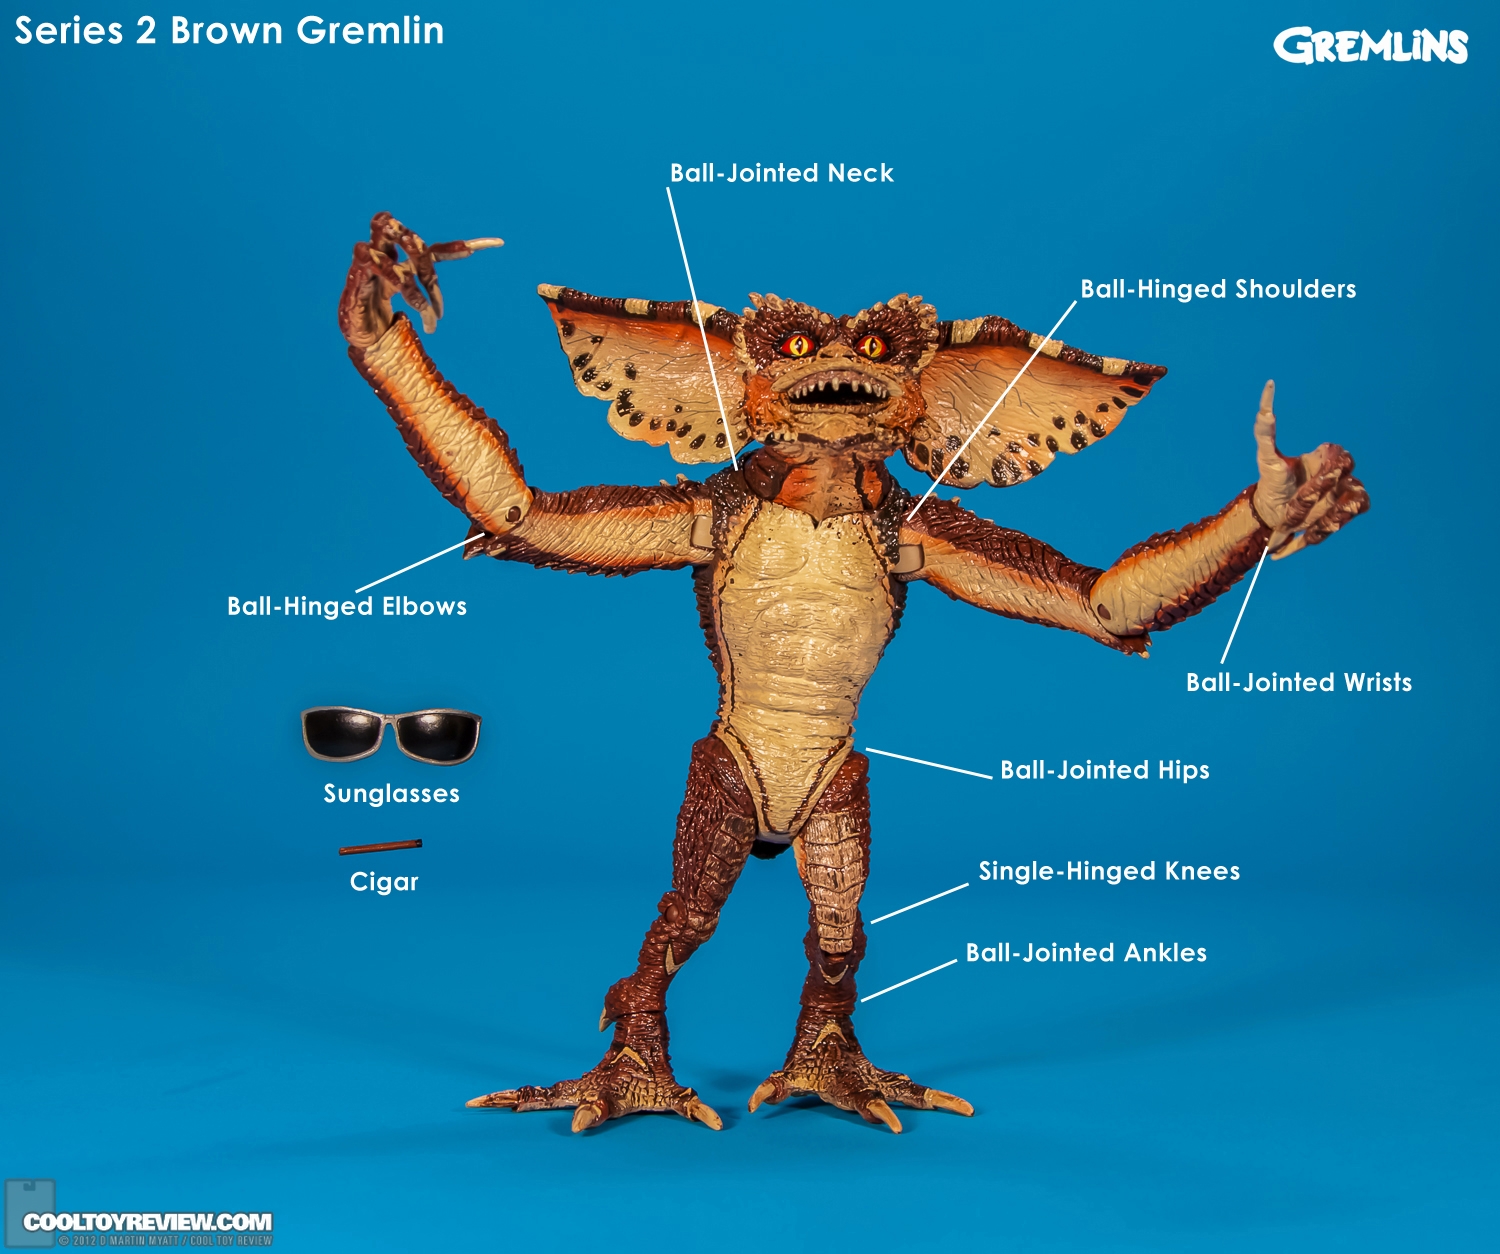 Gremlins_Series_2_Brown_Gemlin_NECA-13.jpg